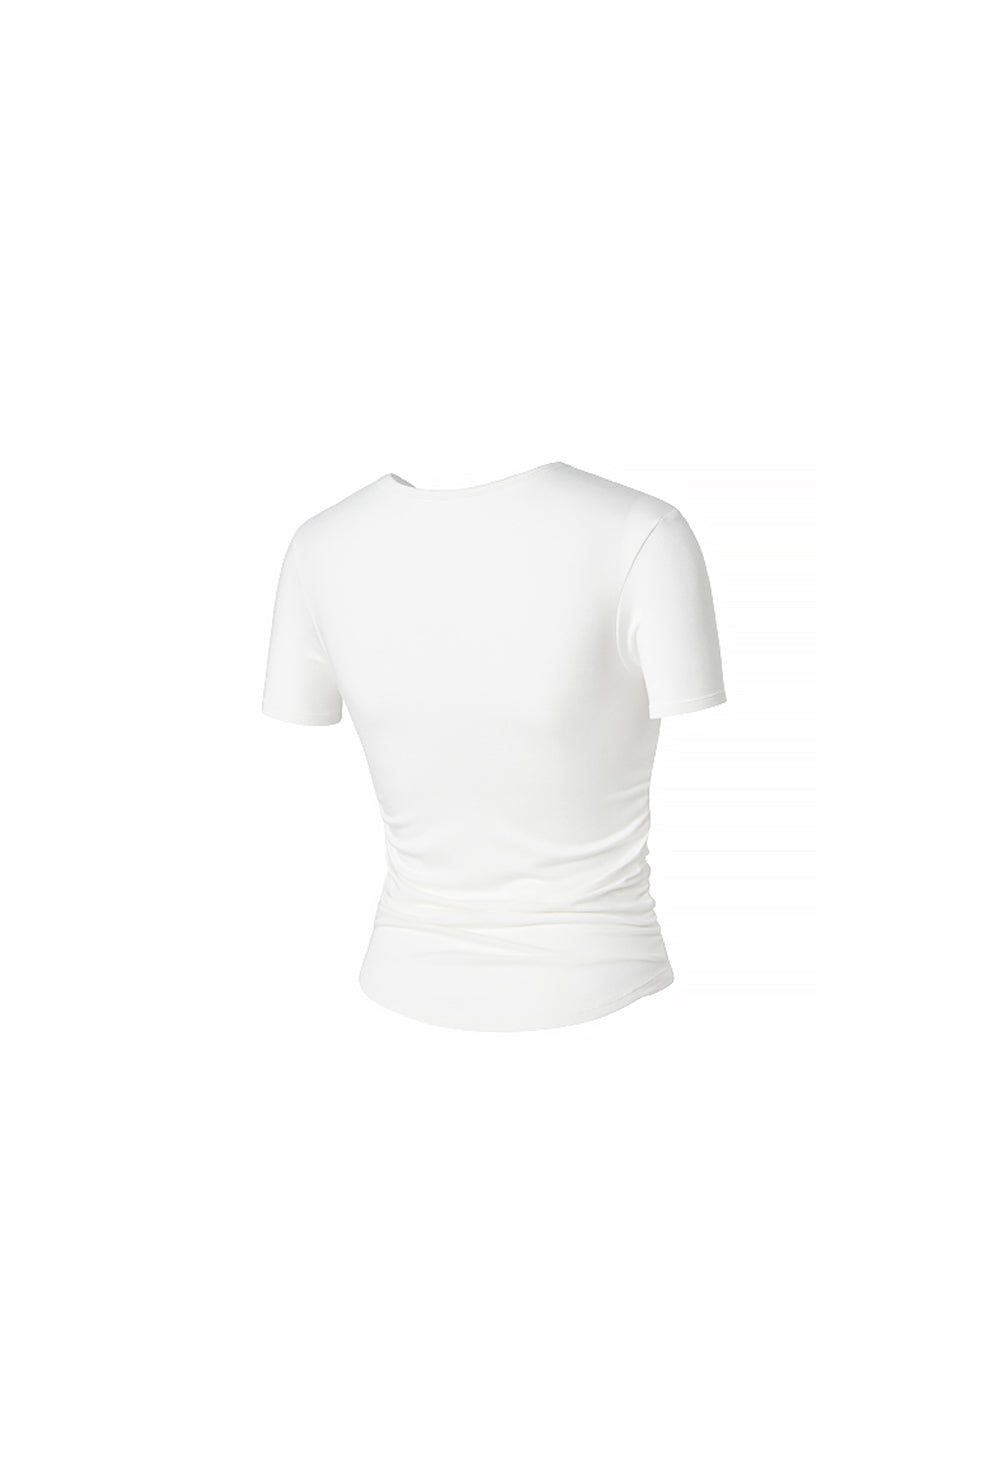 Side Shirring Short Sleeve - Ivory